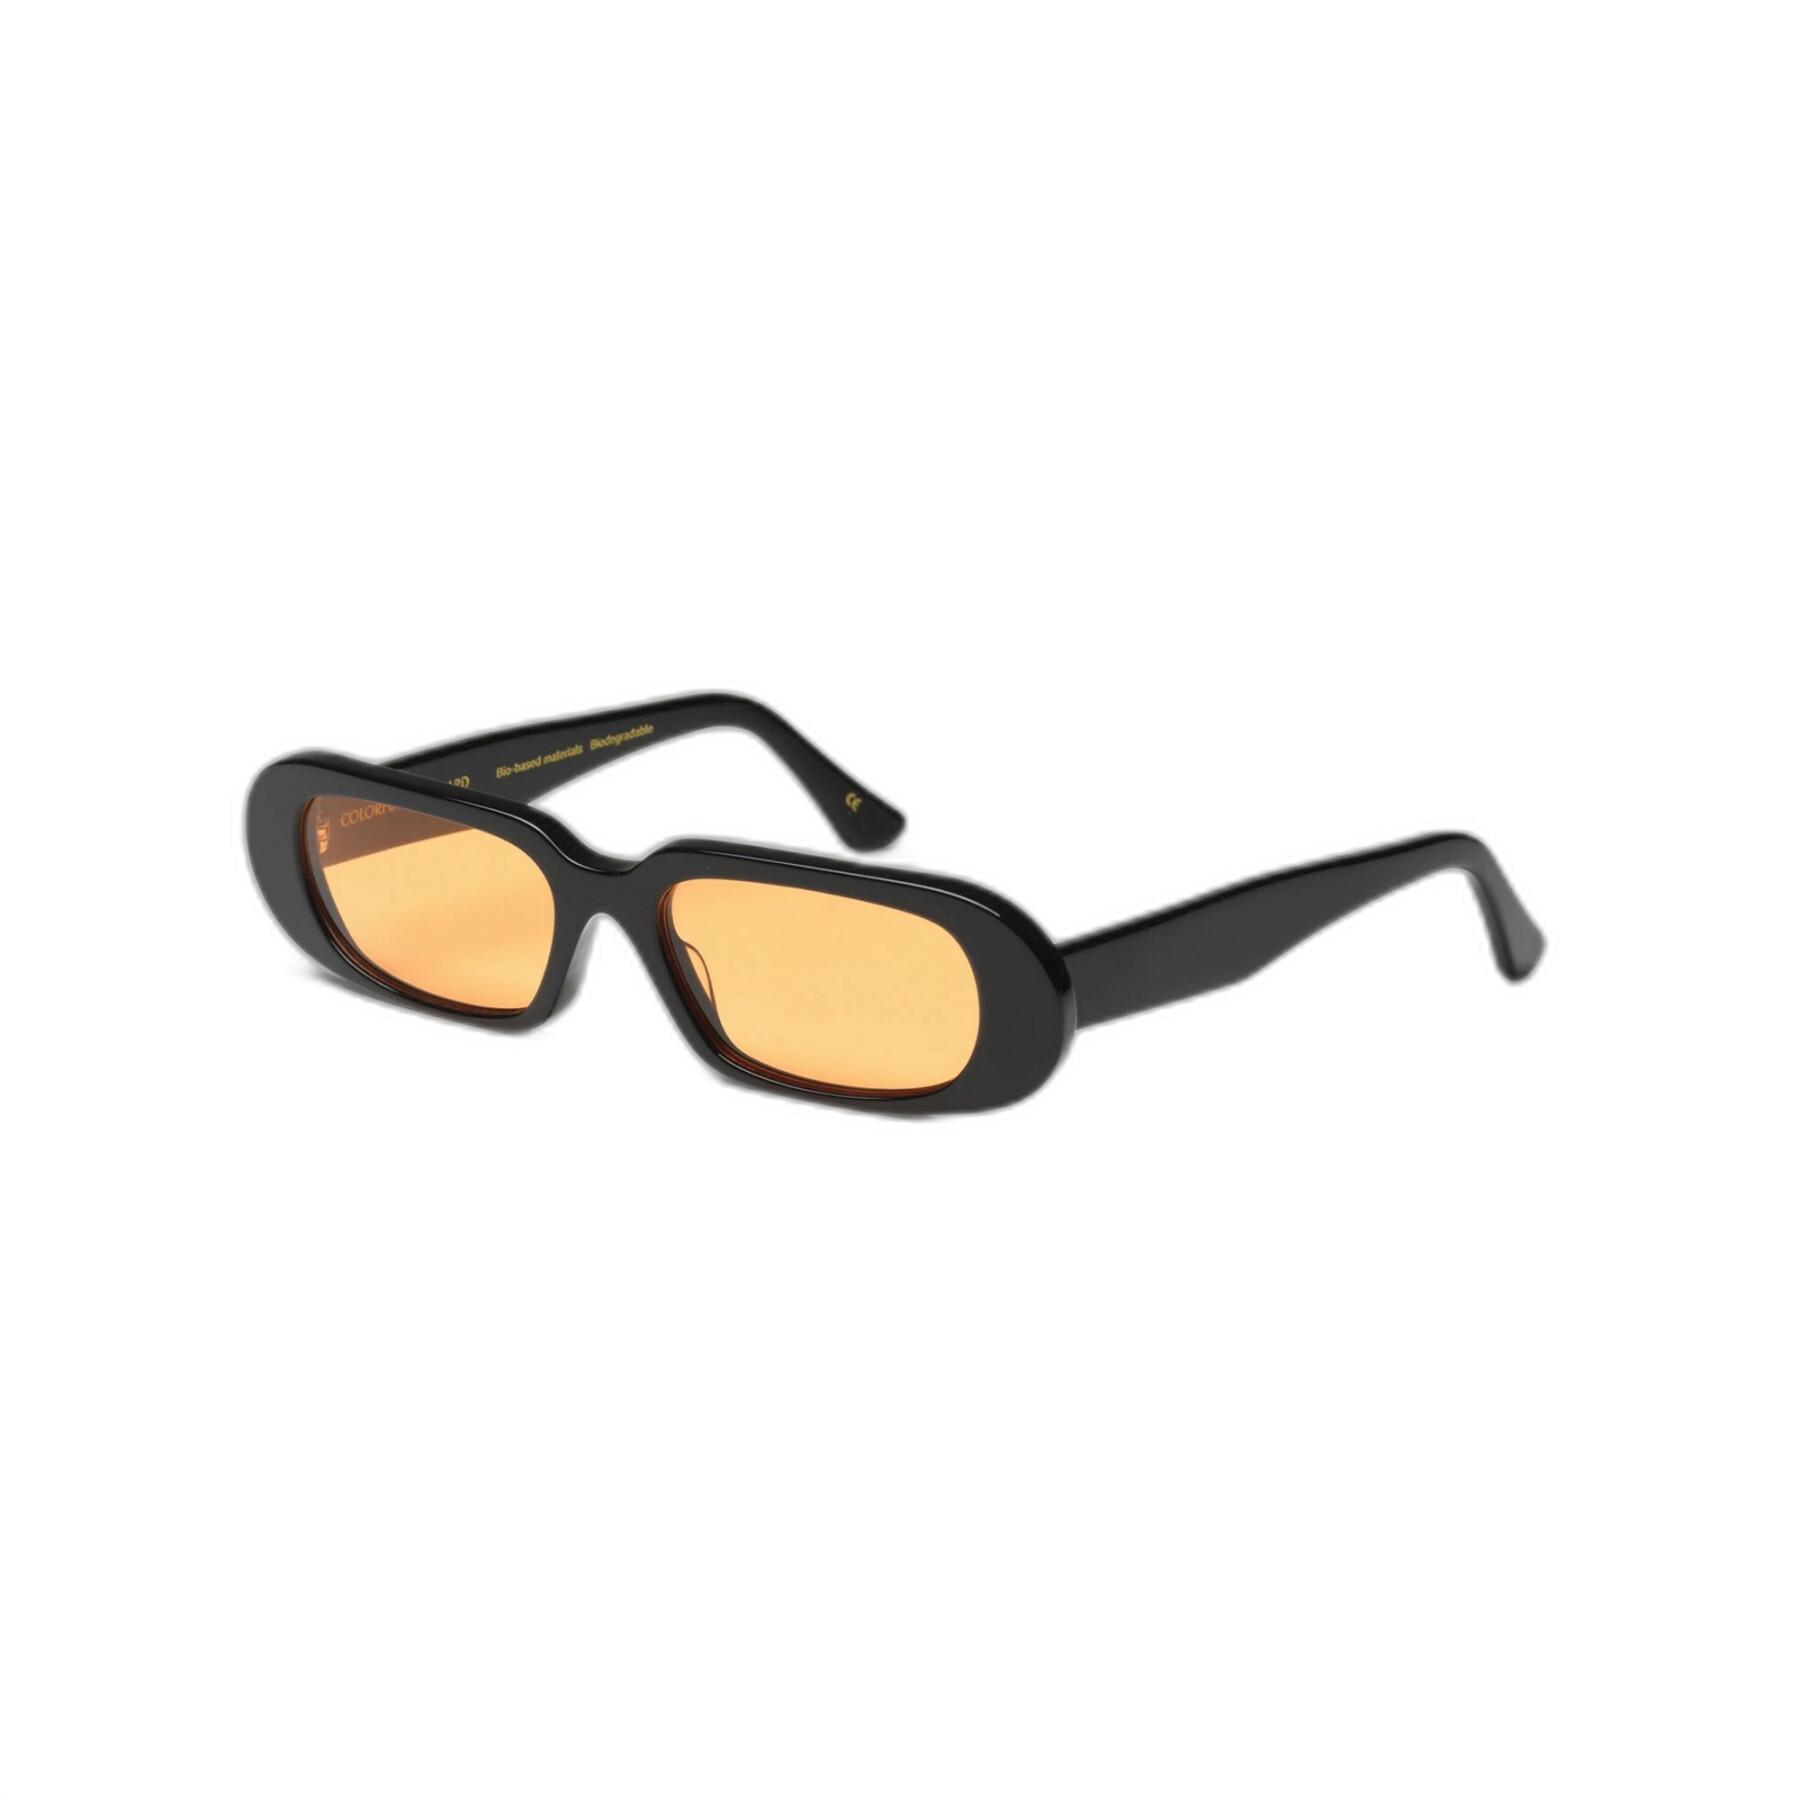 Óculos escuros Colorful Standard 09 deep black solid/orange